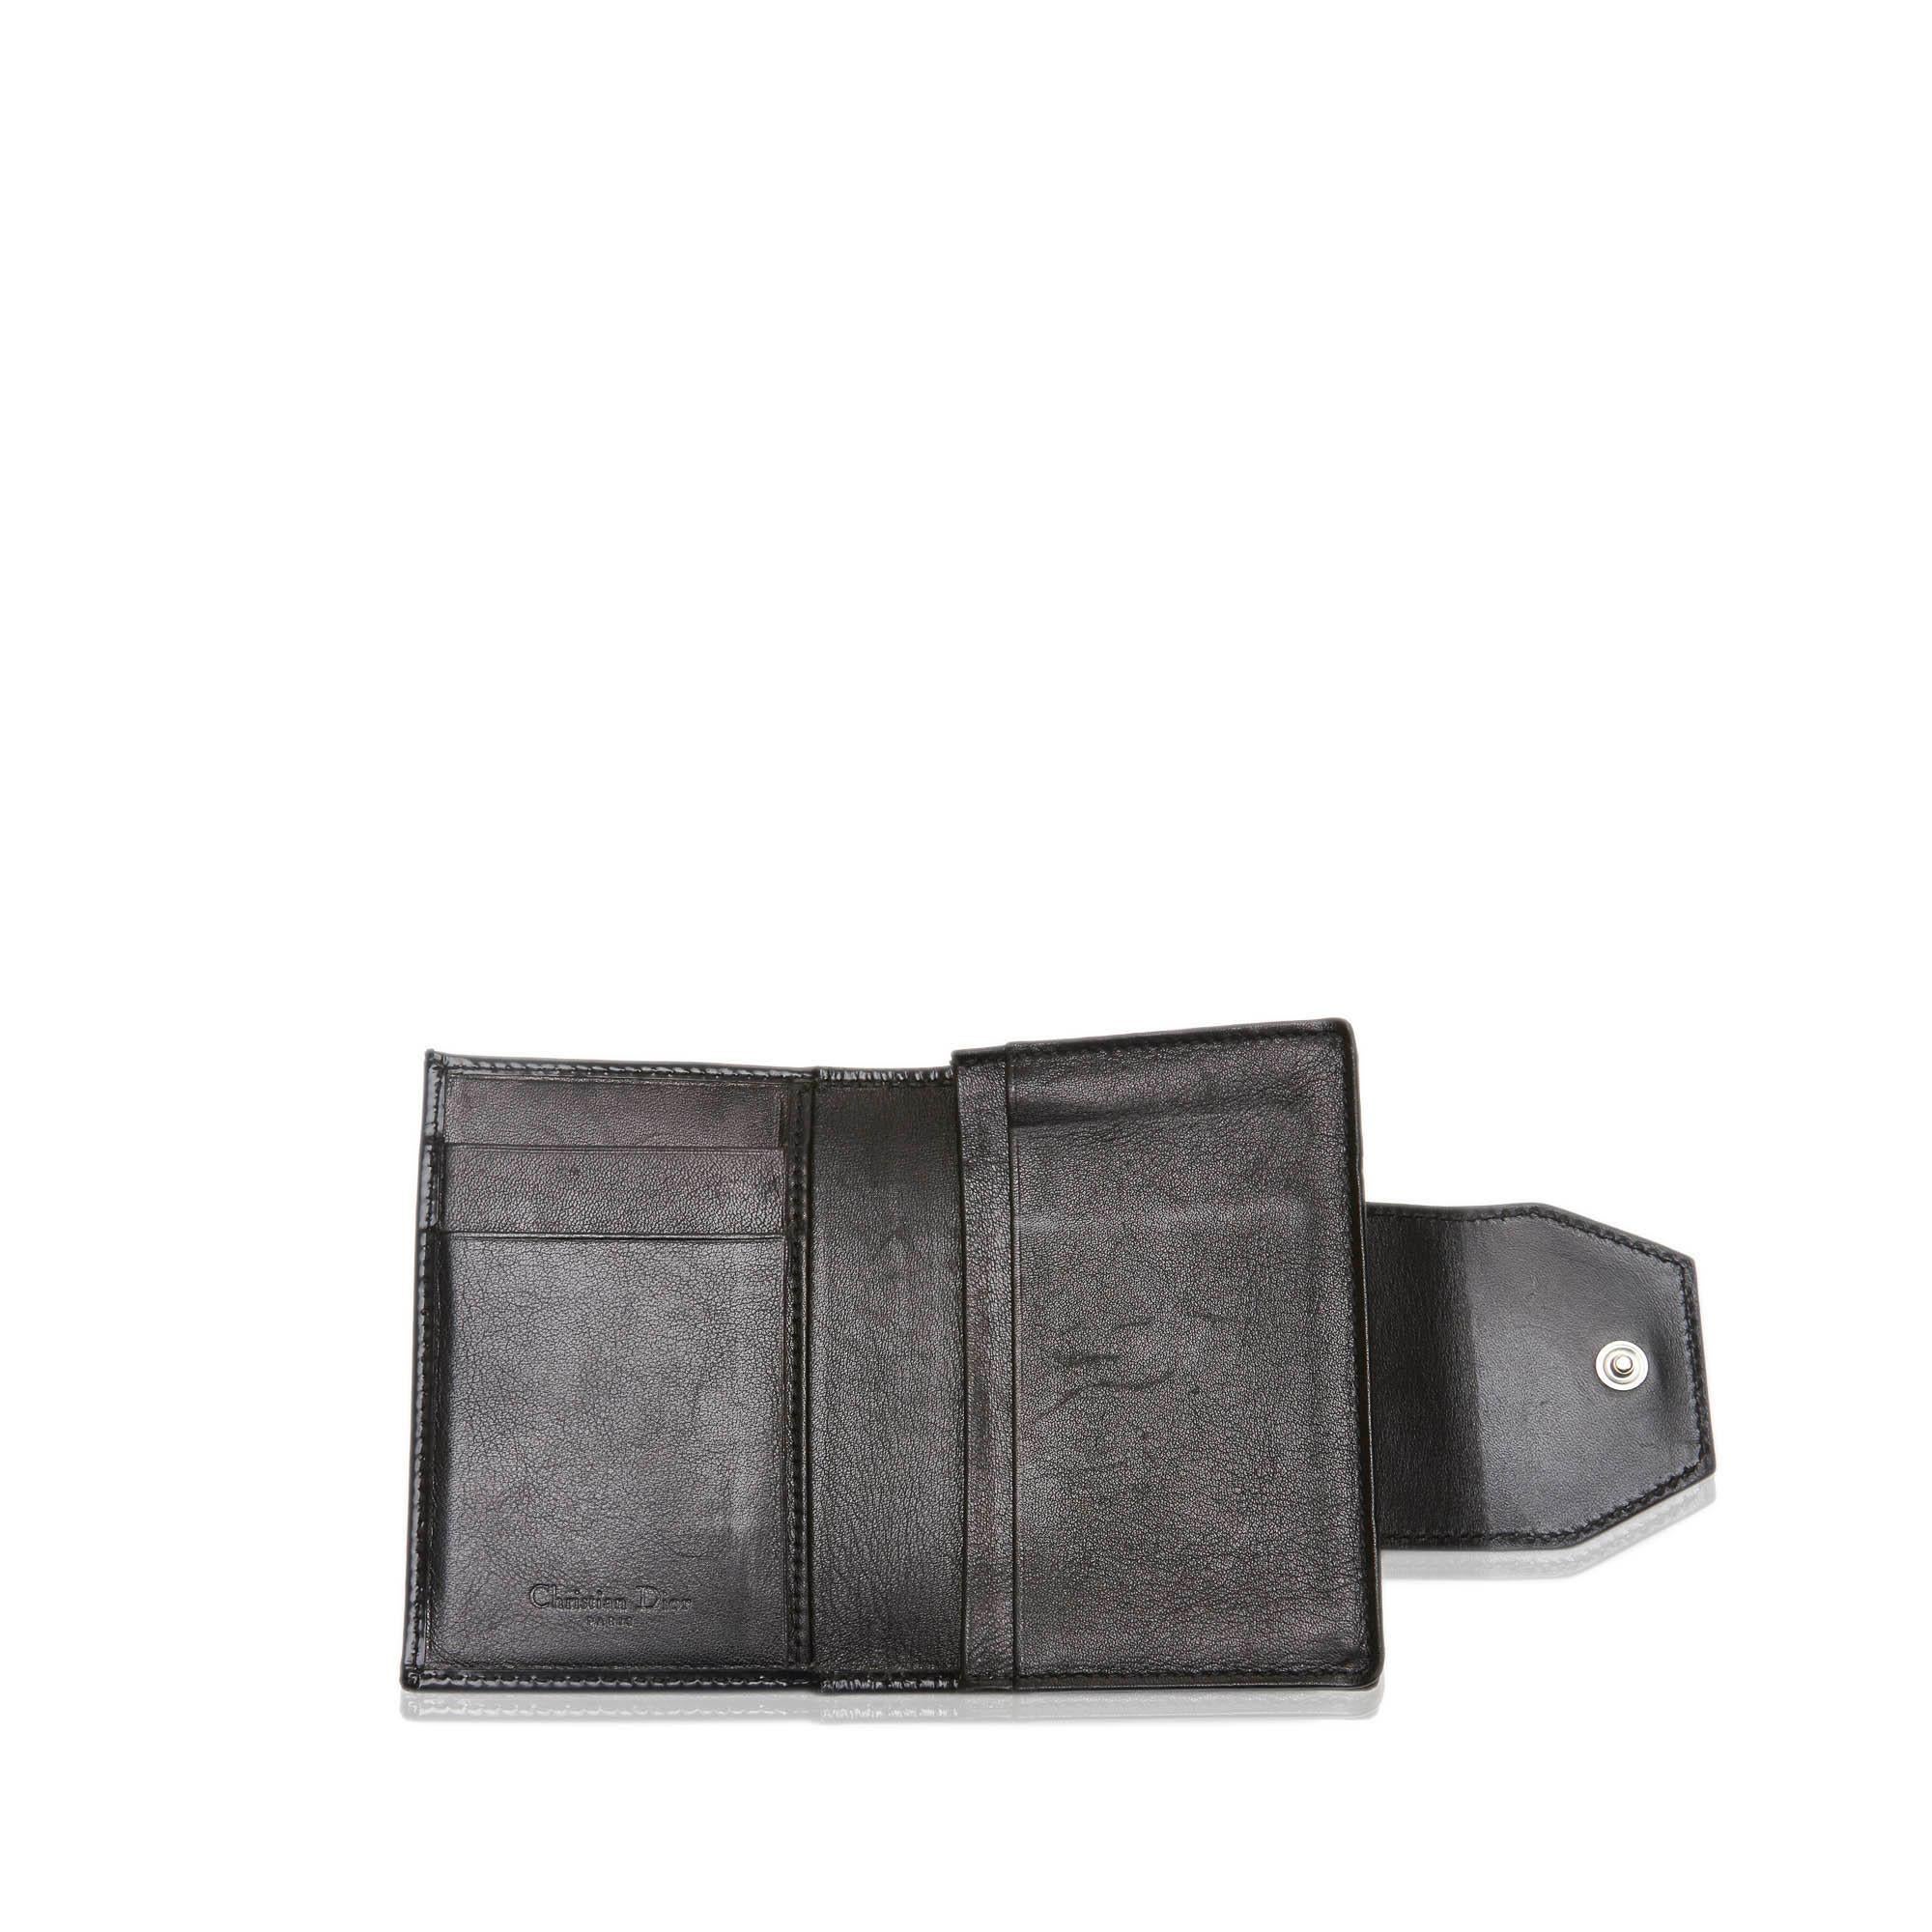 Dior Black  Leather Business Card Holder France 3